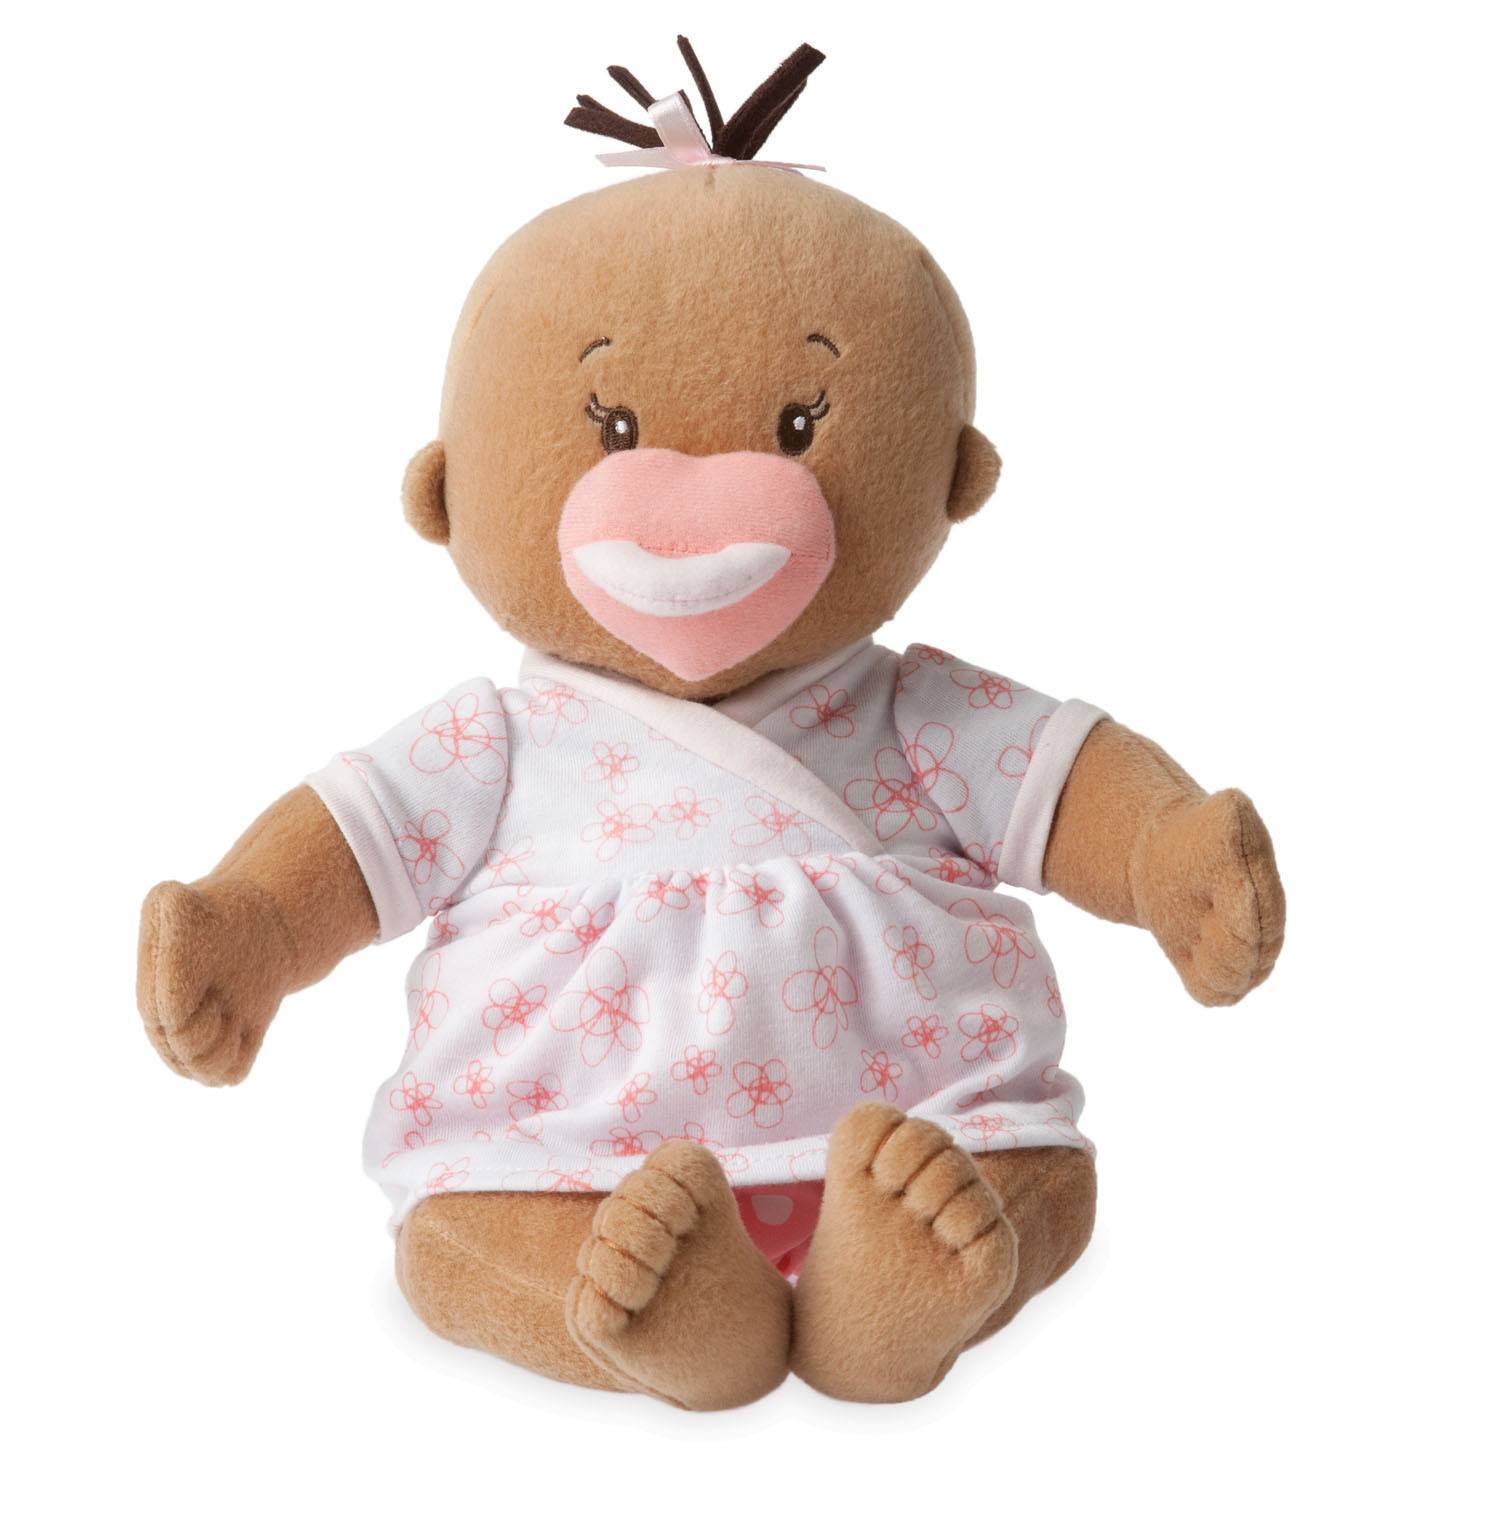 Baby Doll, Baby Stella Beige Soft Nurturing By Manhattan Toy ...